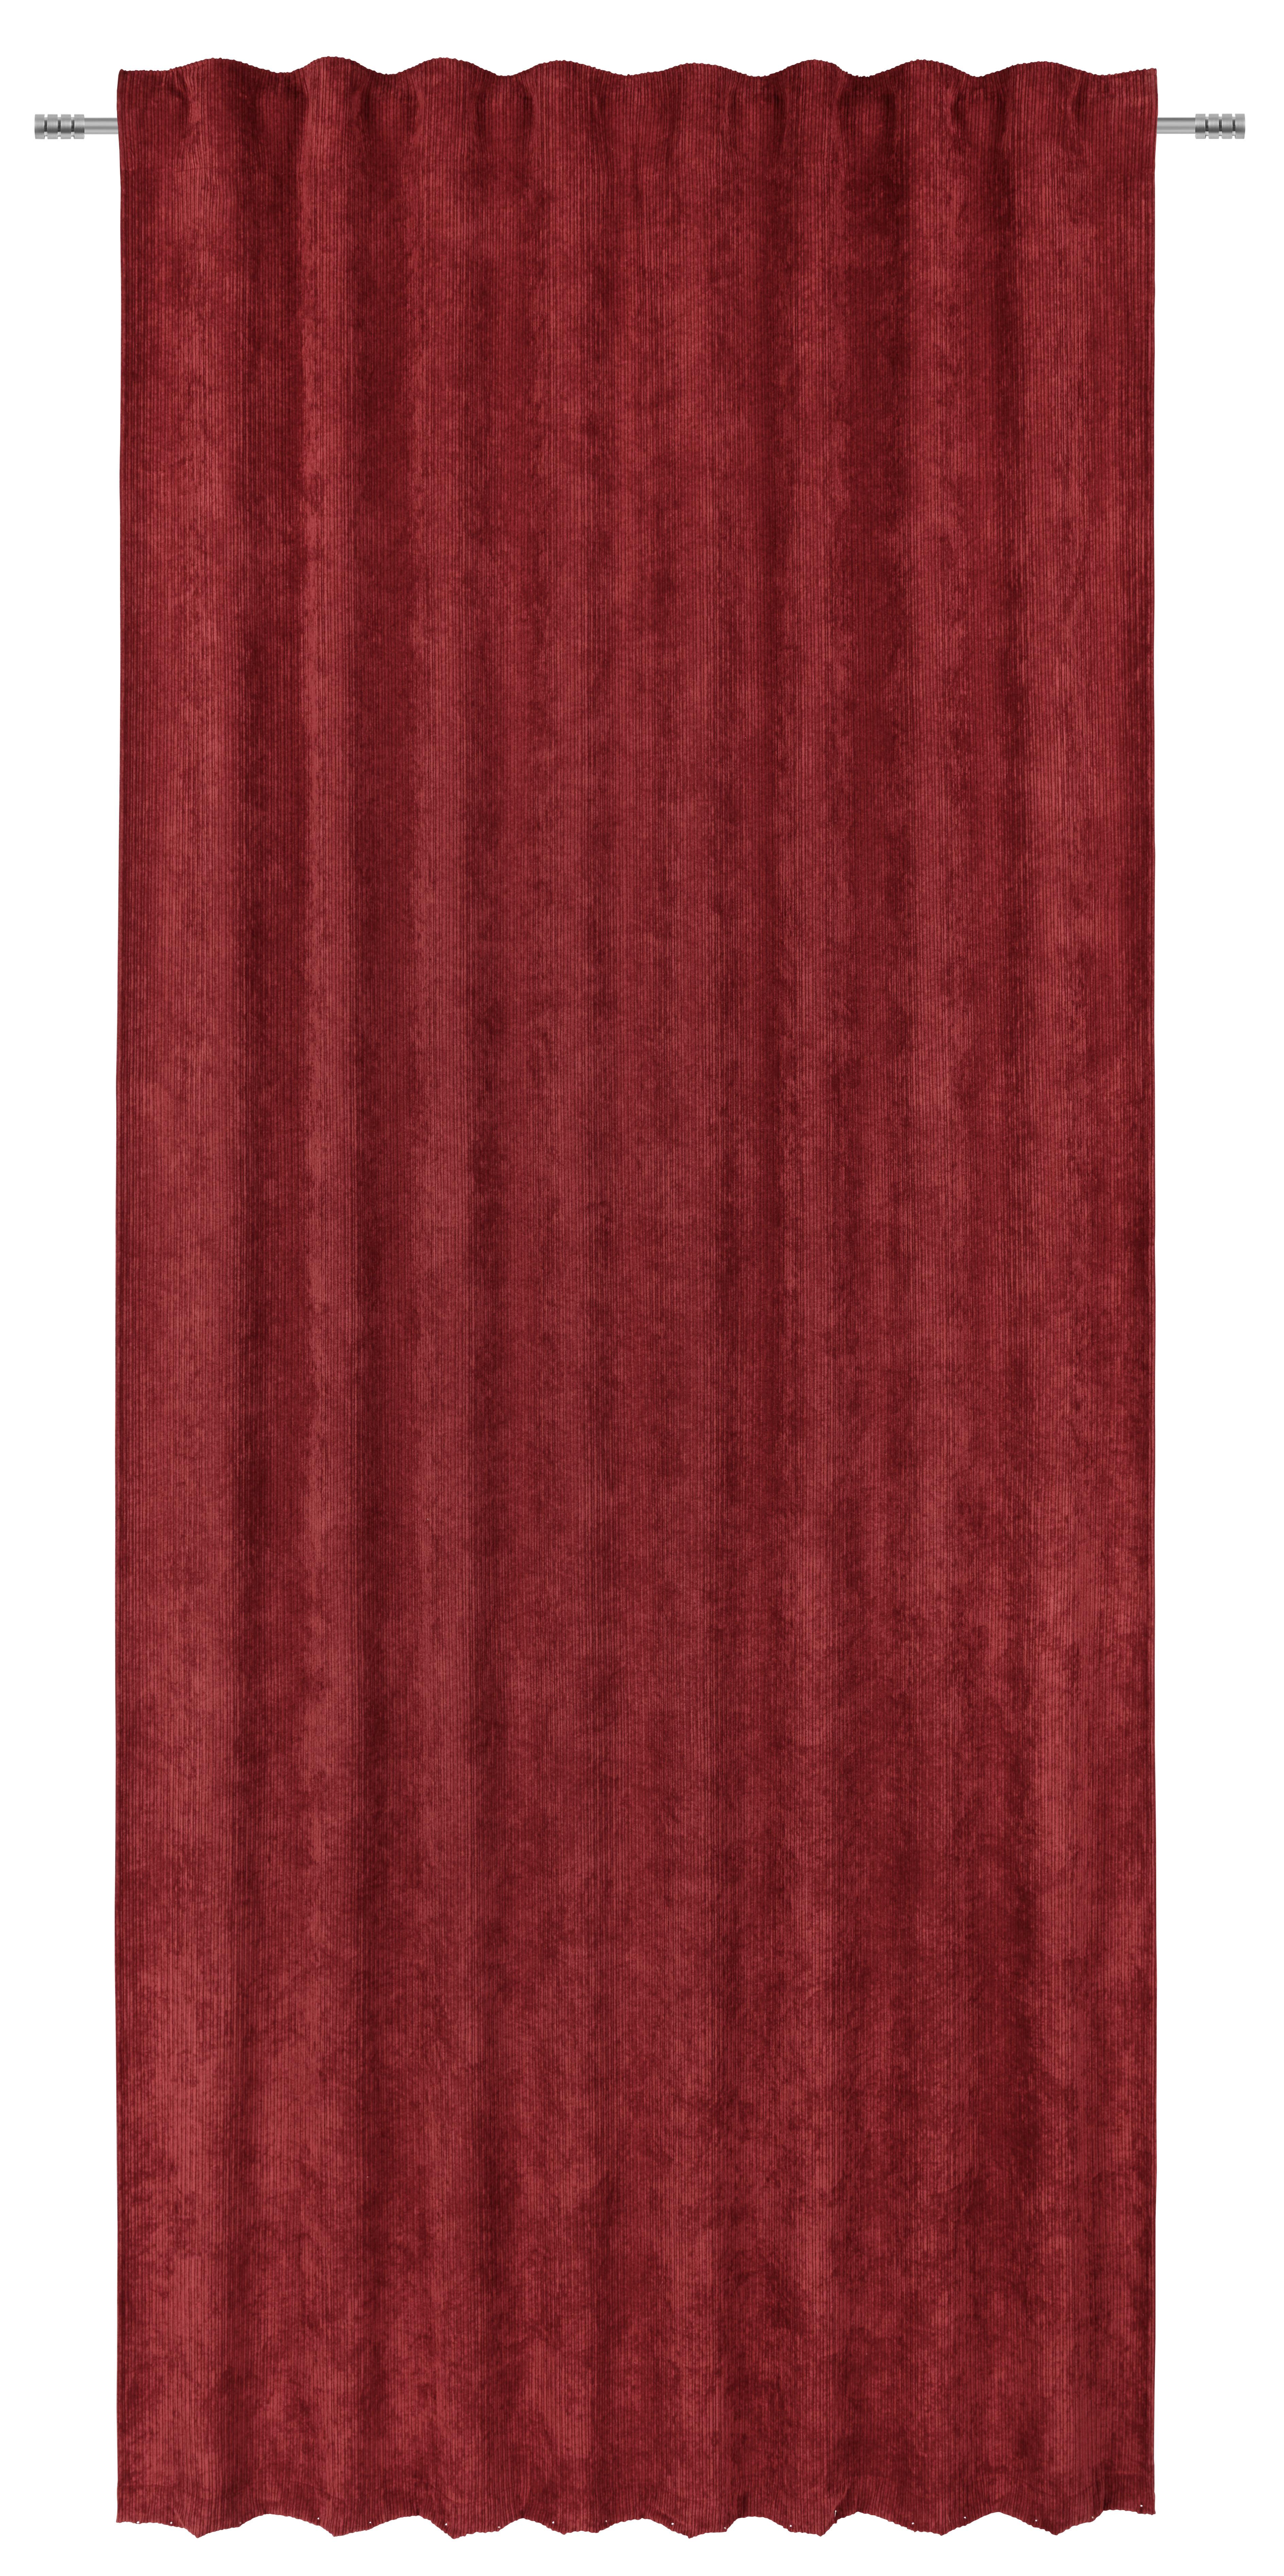 Gotova Zavjesa Corinna - bordo, Modern, tekstil (135/245cm) - Premium Living